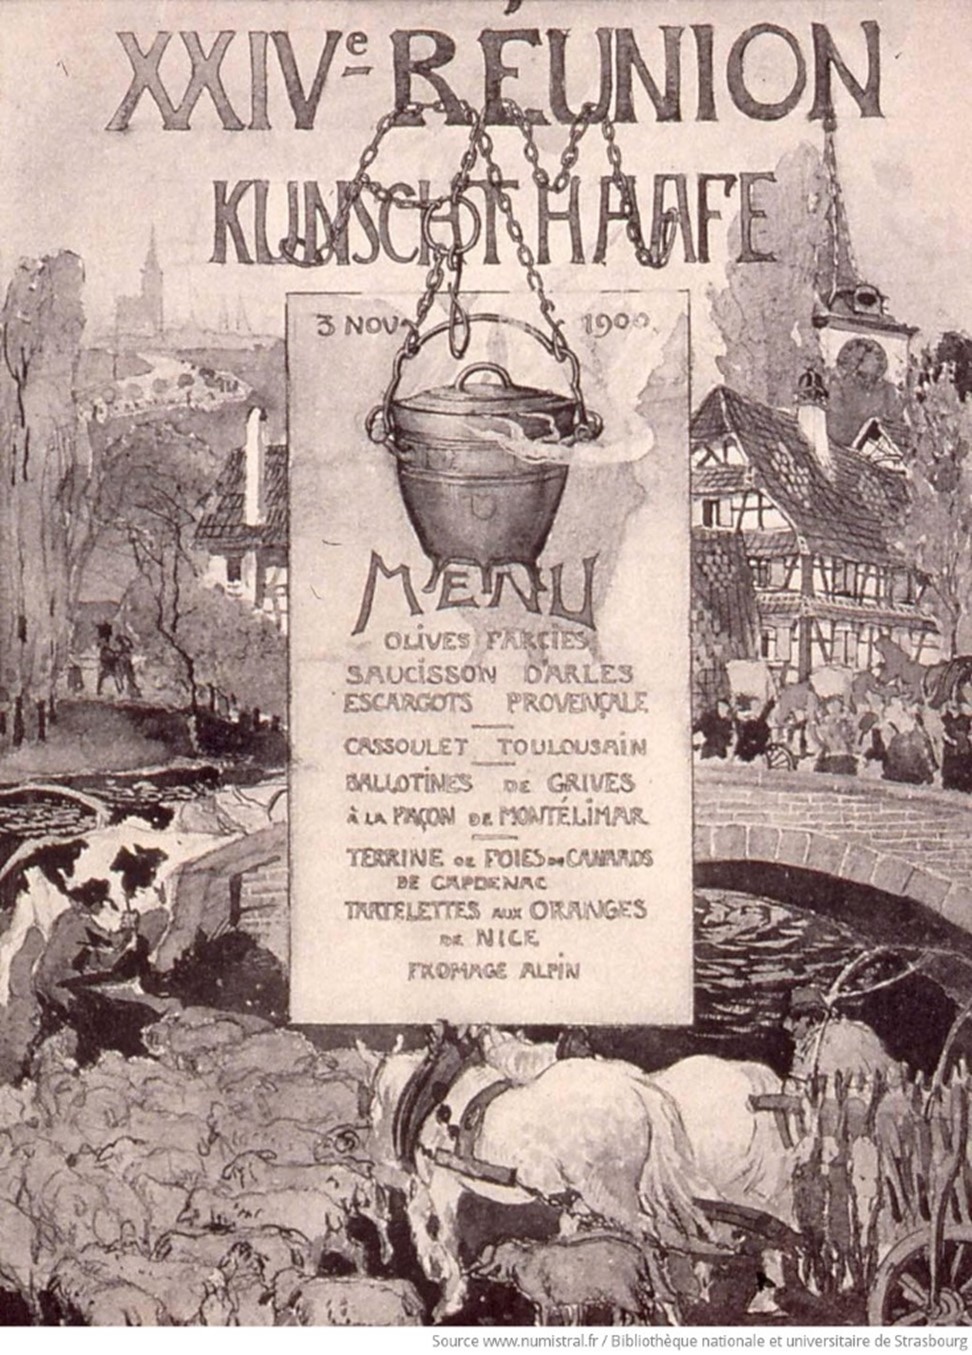 24e réunion du Kunschthaafe, M.31.395